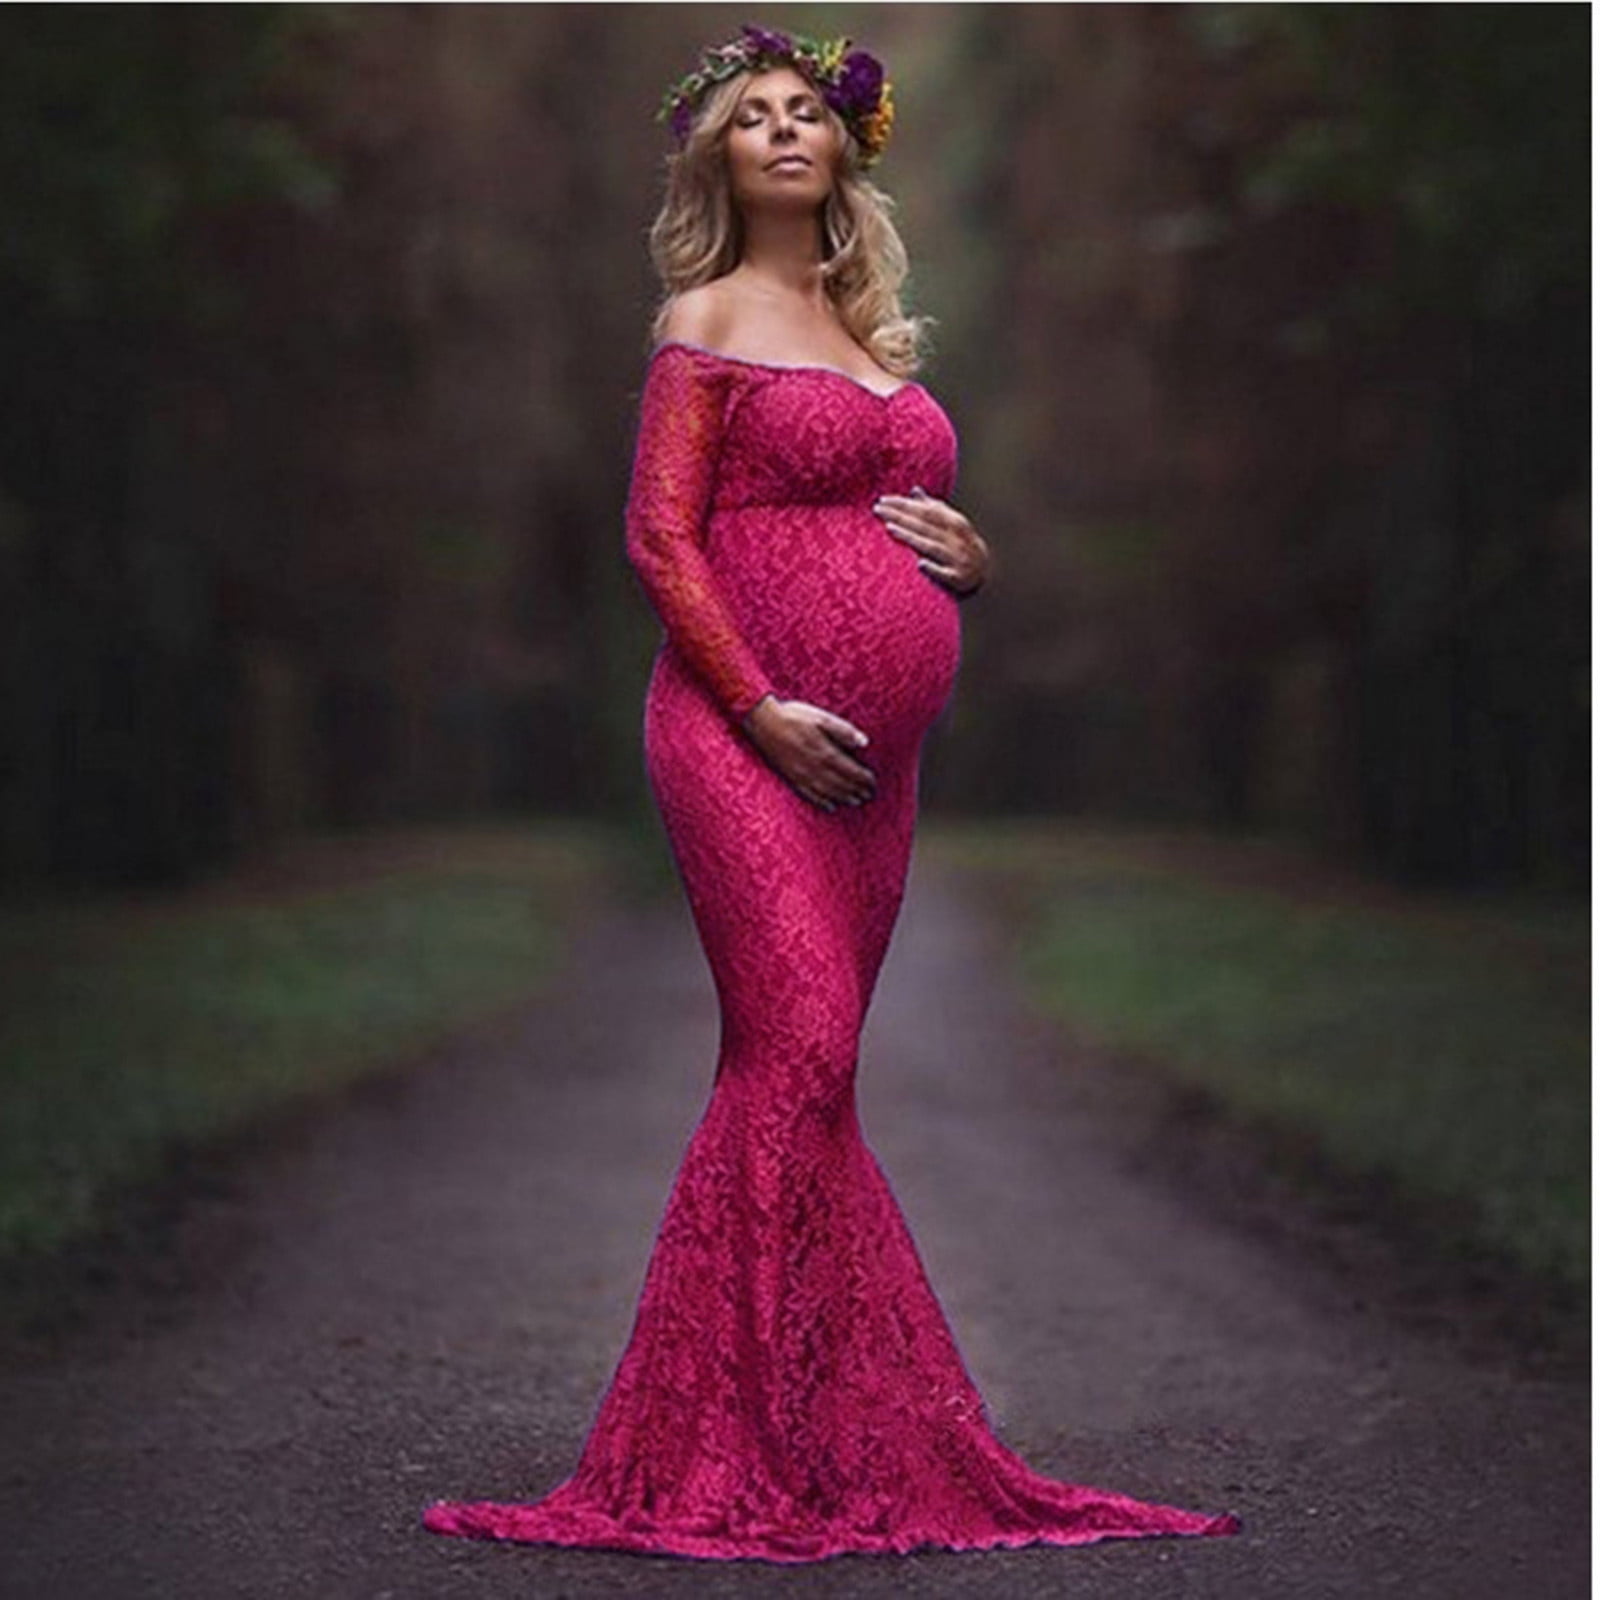 Spring Elegant Maternity Dresses For Photo Shoot Pregnant Women Dress Long  Sleeve V-Neck Pregnancy Photography